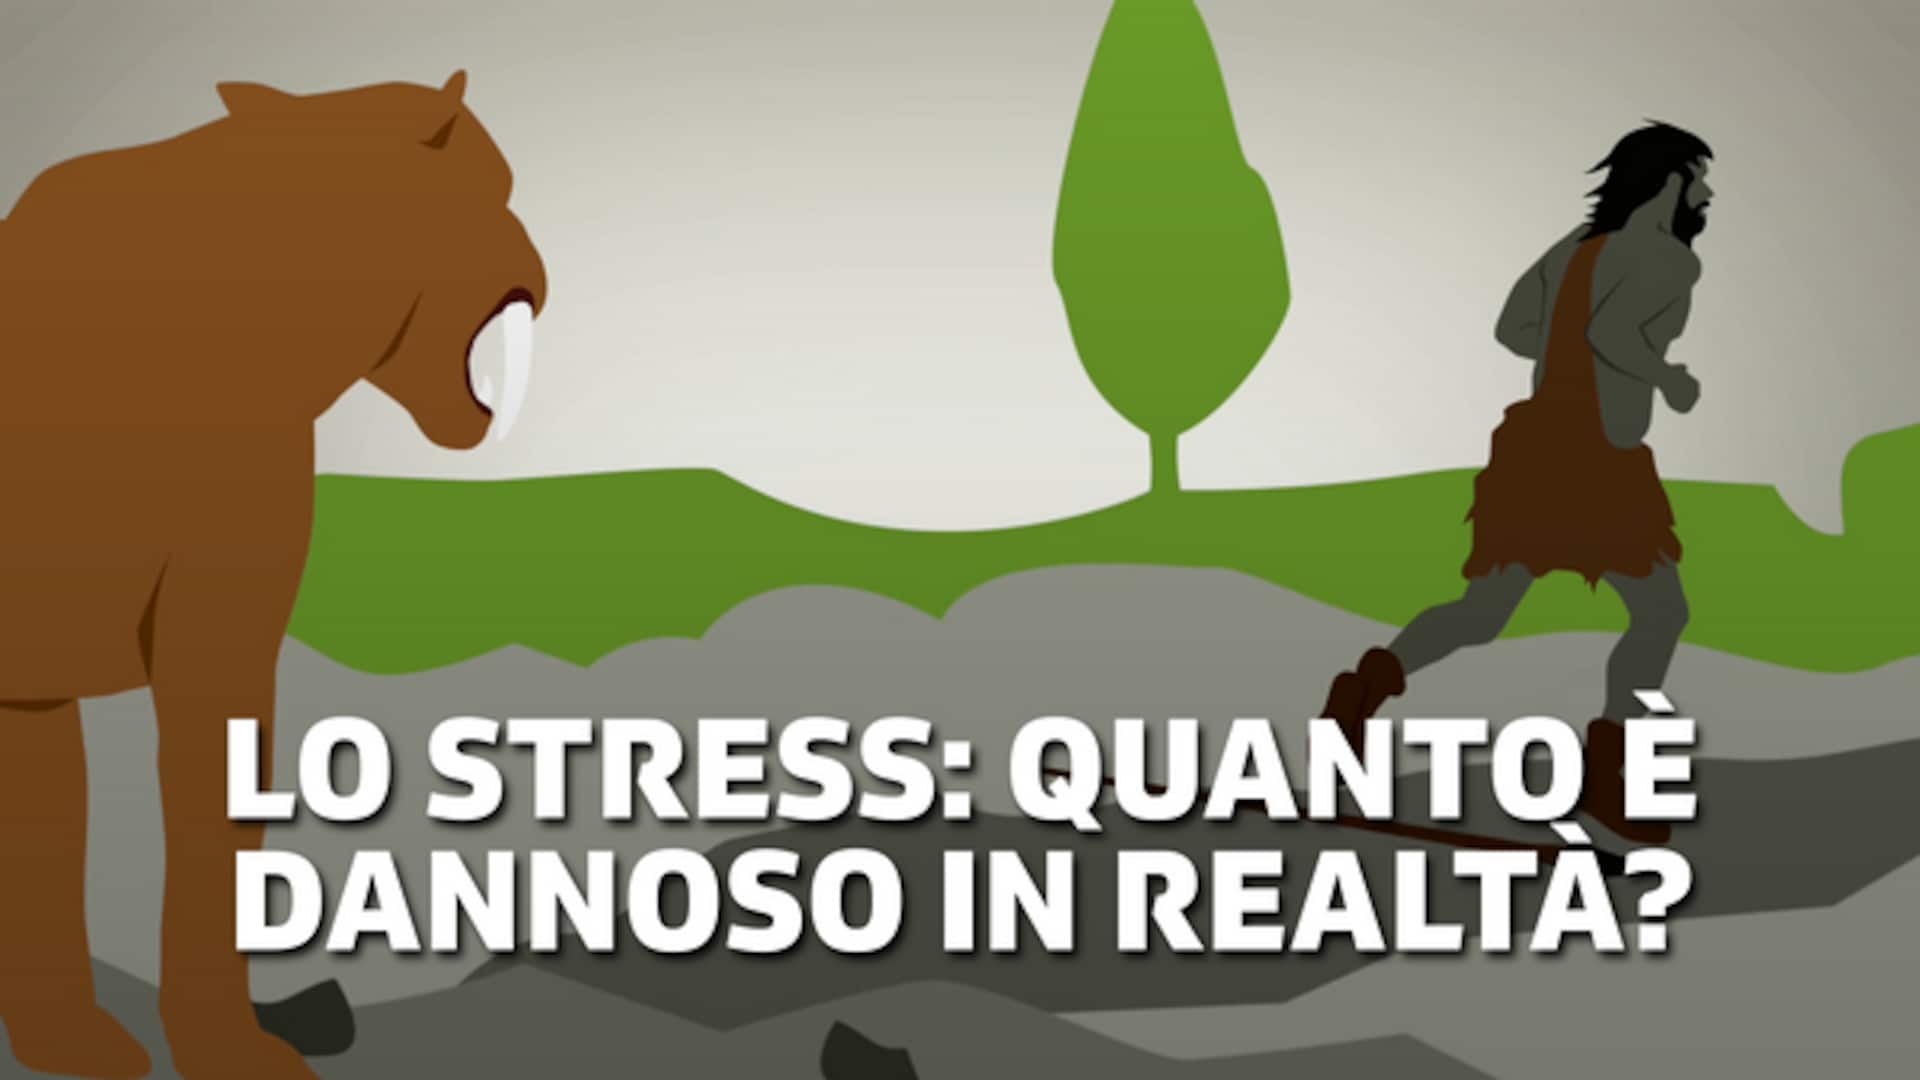 Lo stress: quanto è dannoso in realtà?